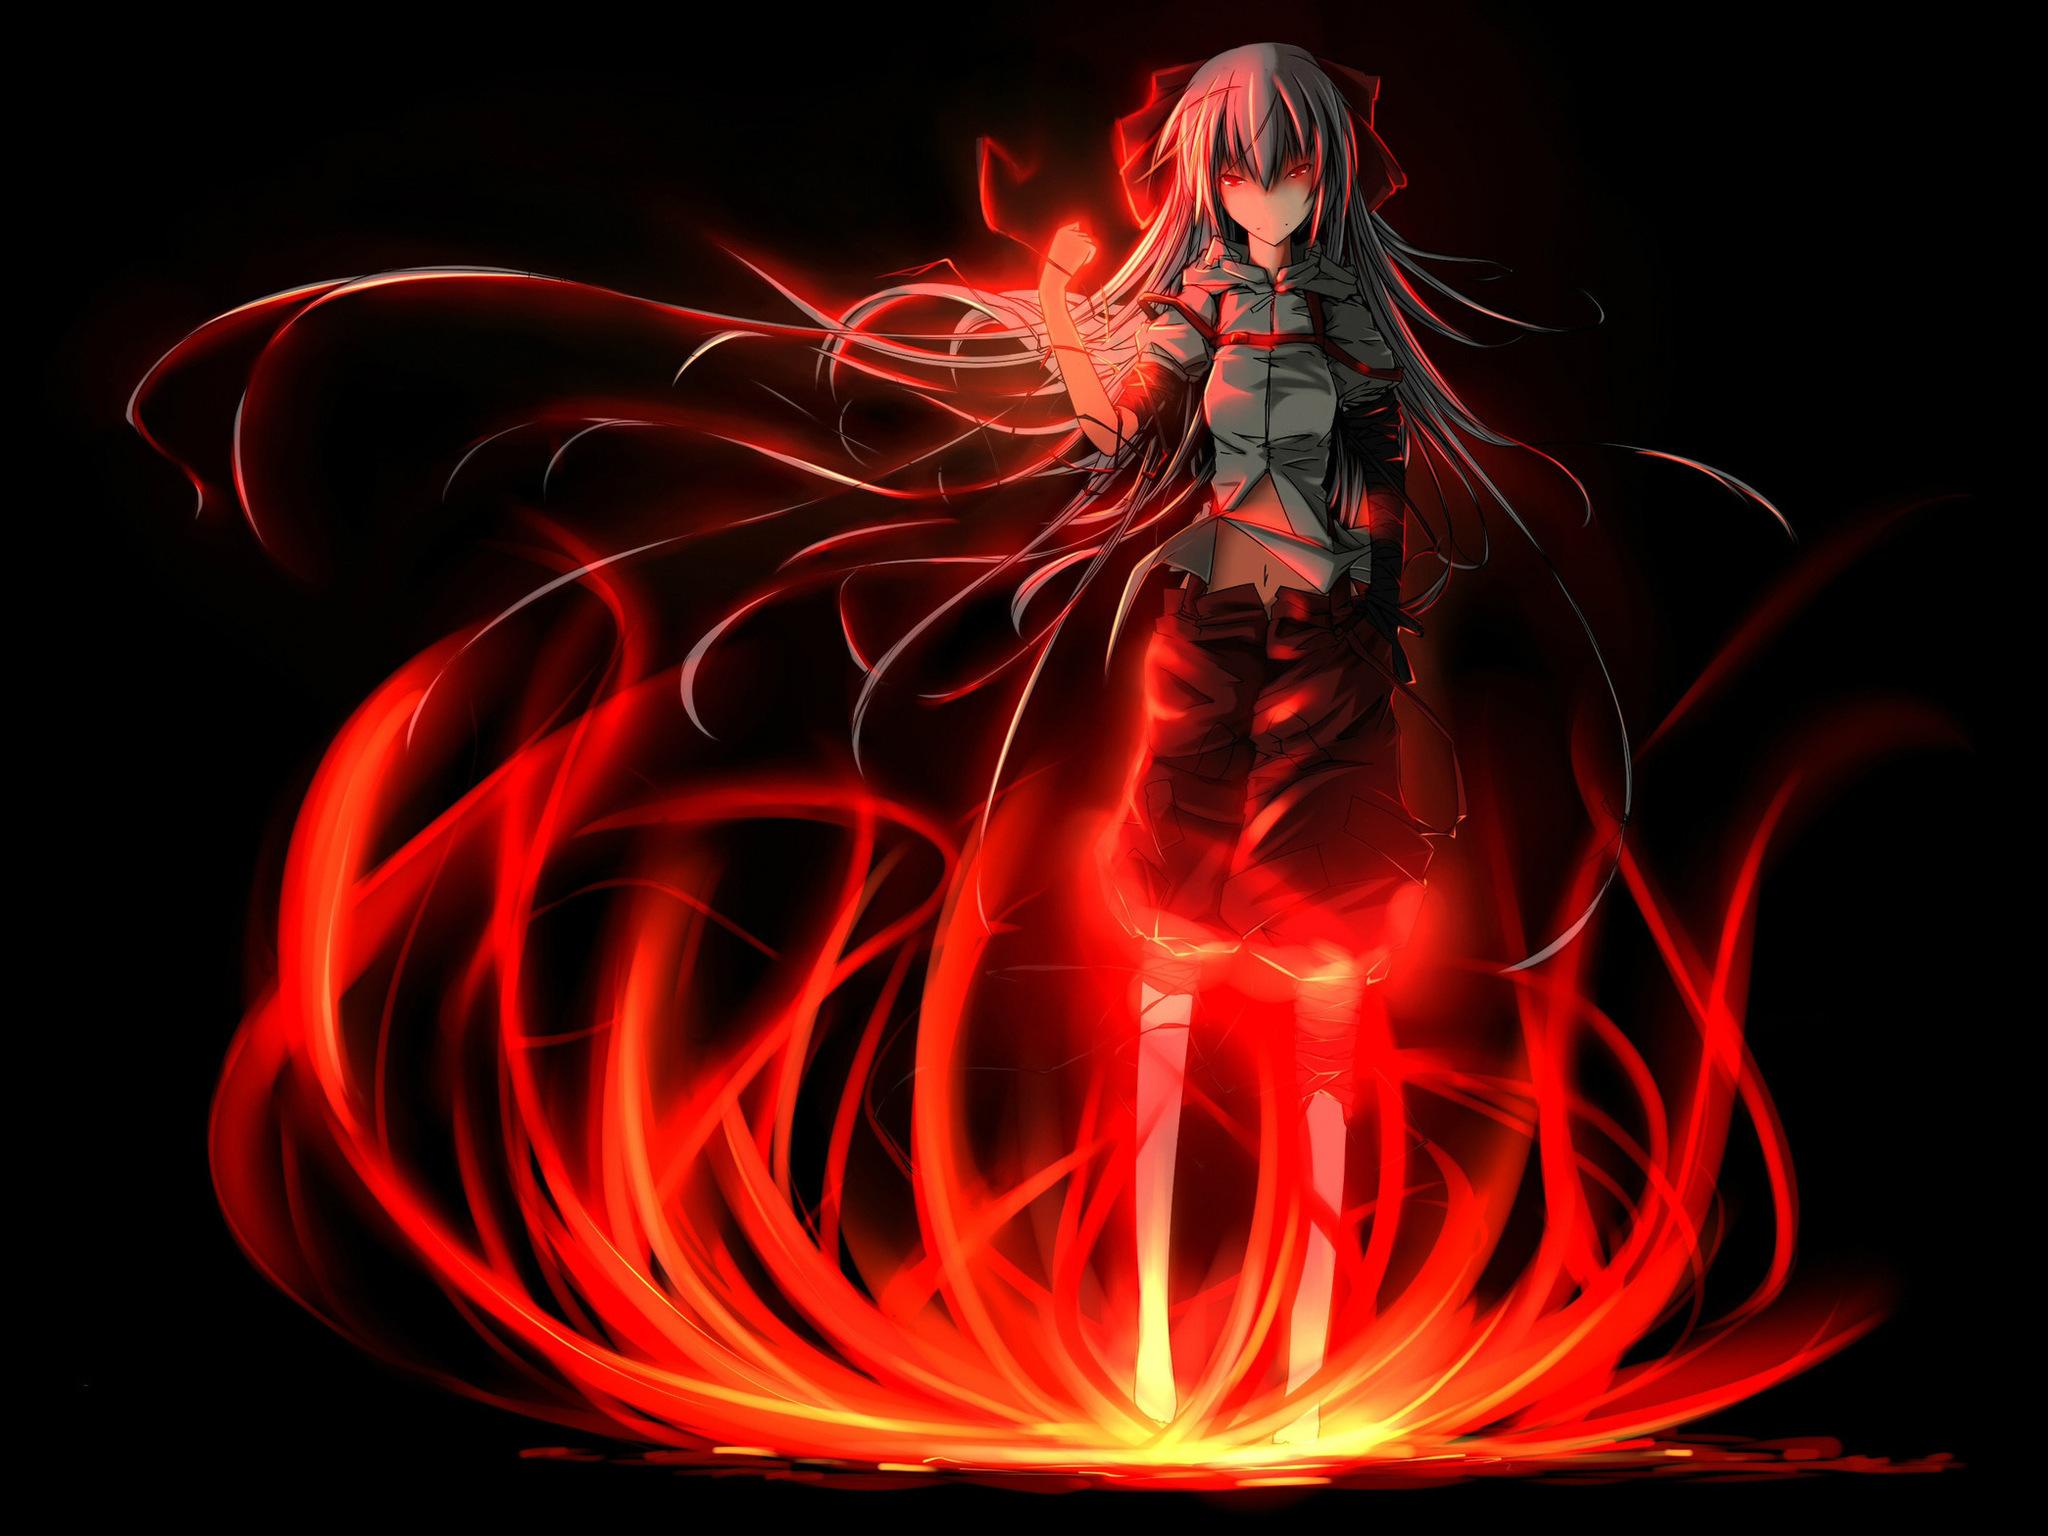 Sad Anime Wallpaper Girl On Fire 2048X1536. Wallpaper 3D